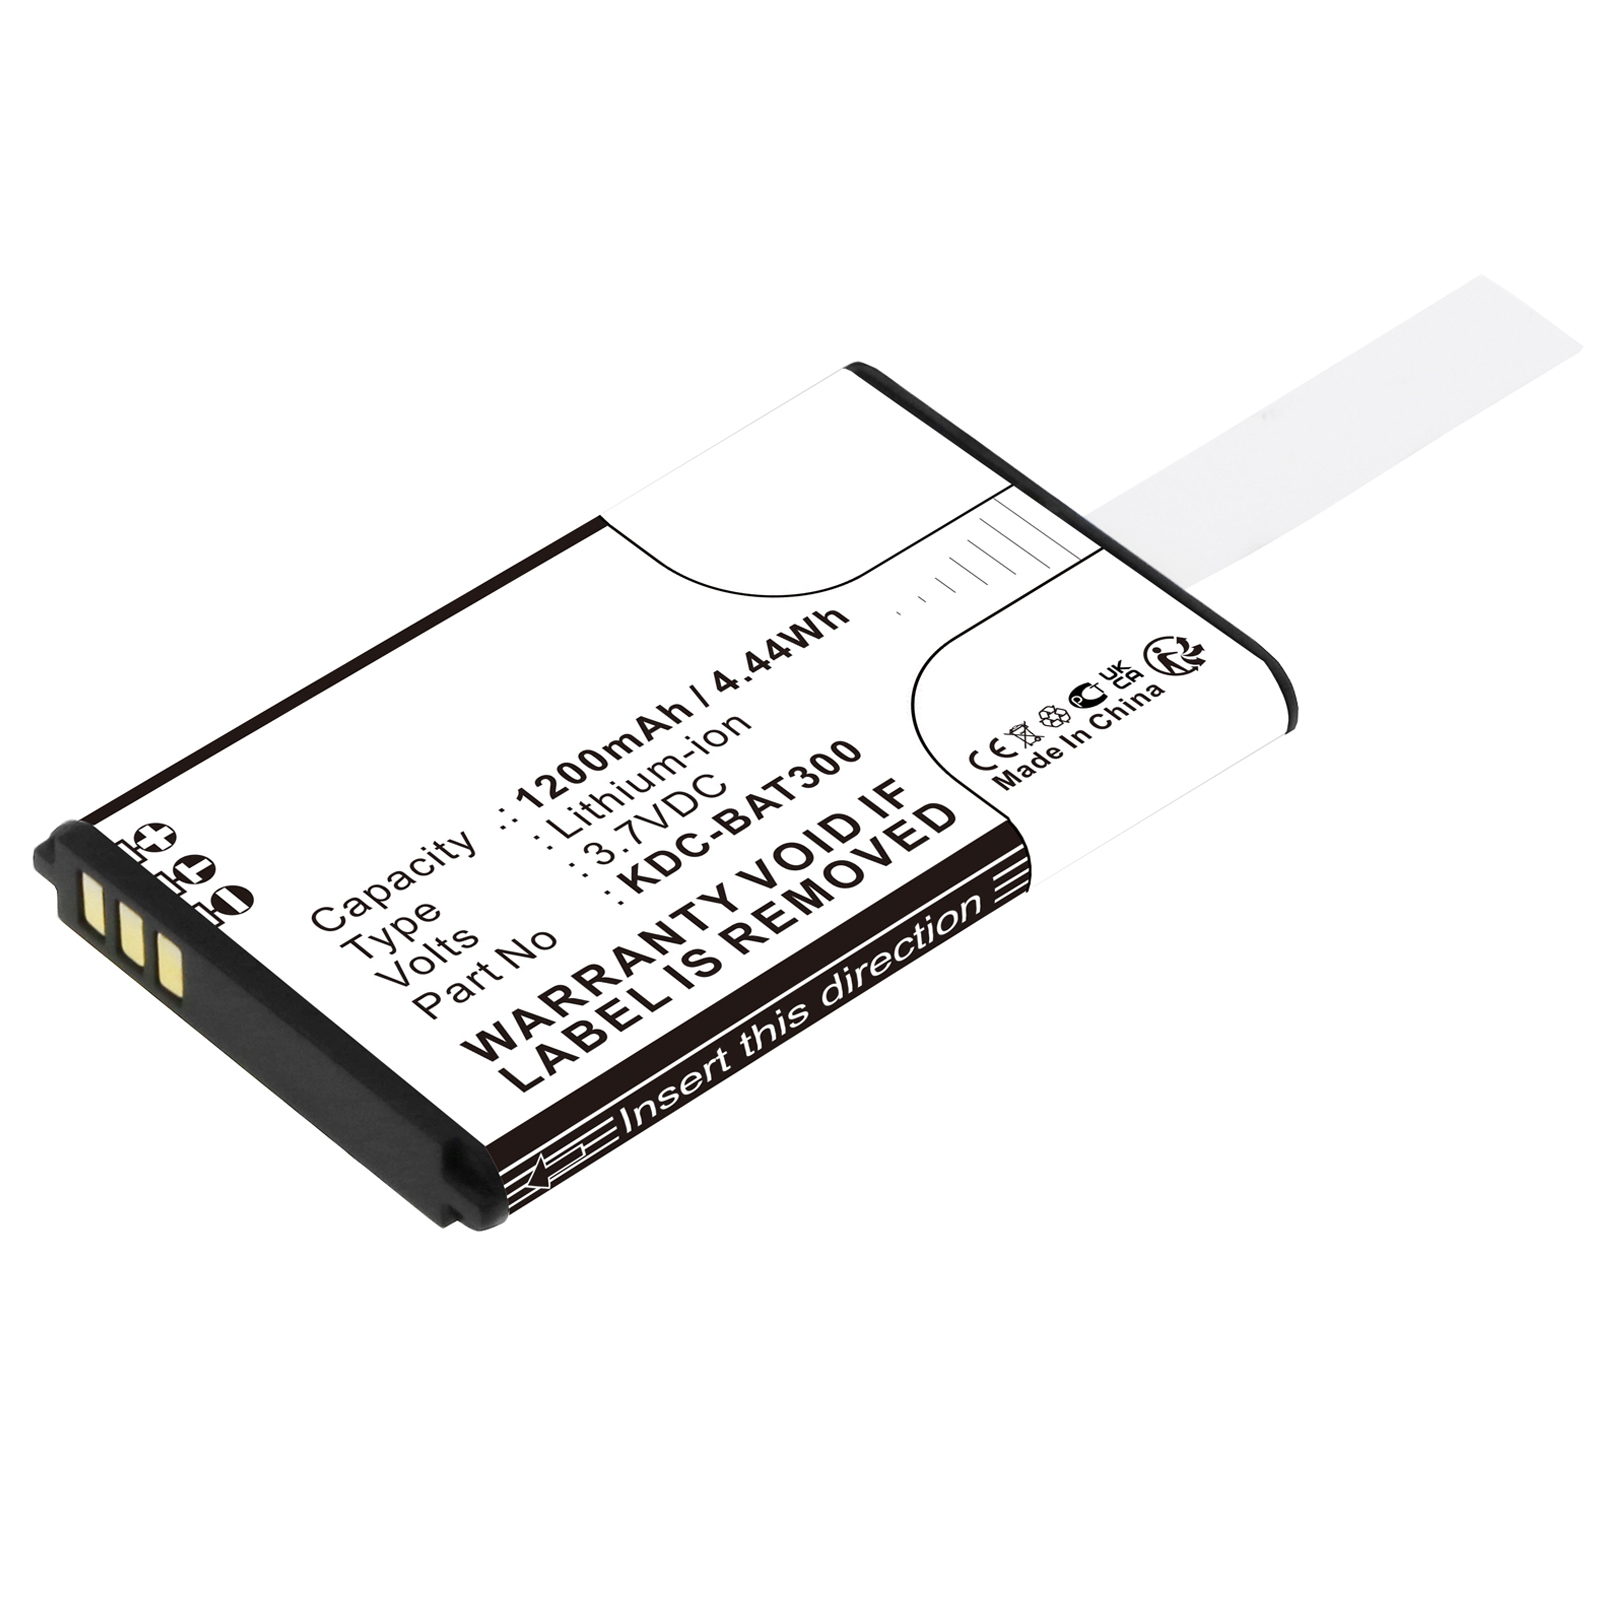 Synergy Digital Barcode Scanner Battery, Compatible with KOAMTAC KDC-BAT300 Barcode Scanner Battery (Li-ion, 3.7V, 1200mAh)